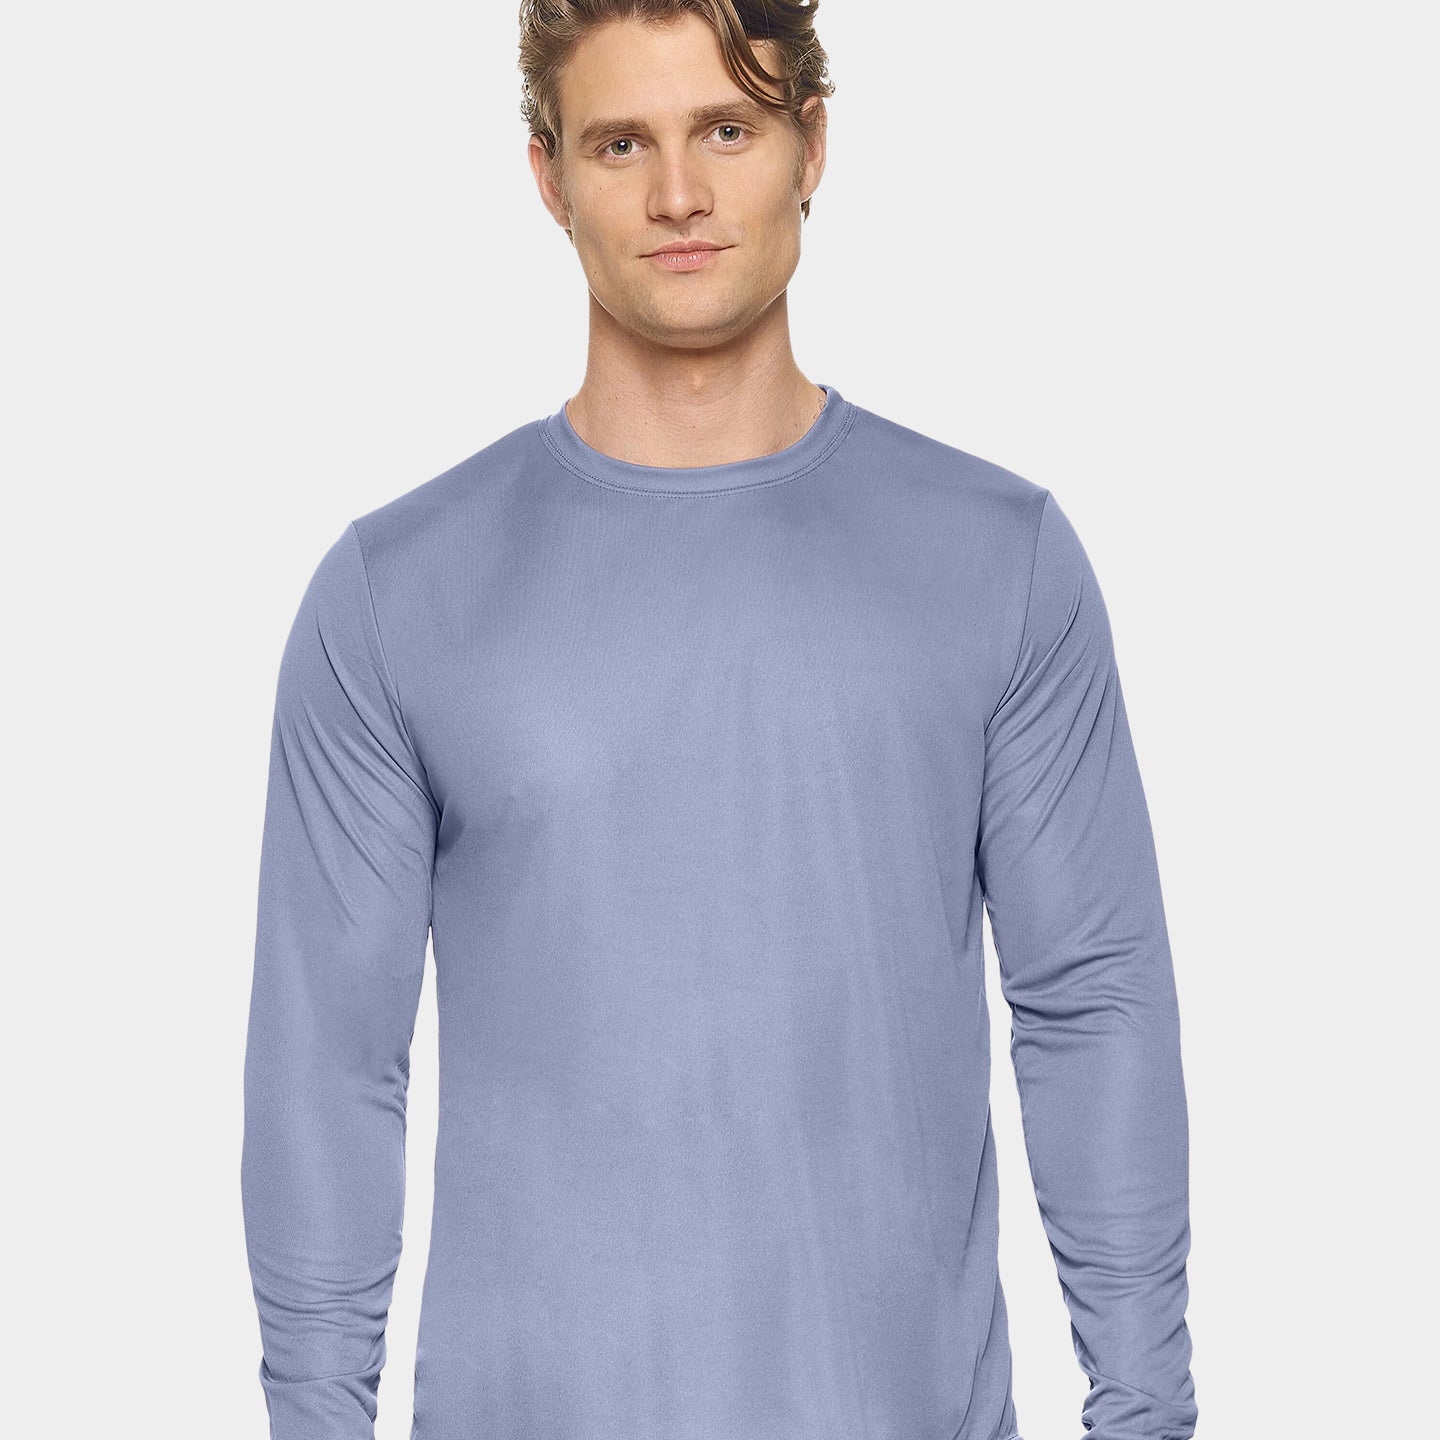 Expert Brand DriMax Men's Performance Long Sleeve Shirt, XXS, Steel A1